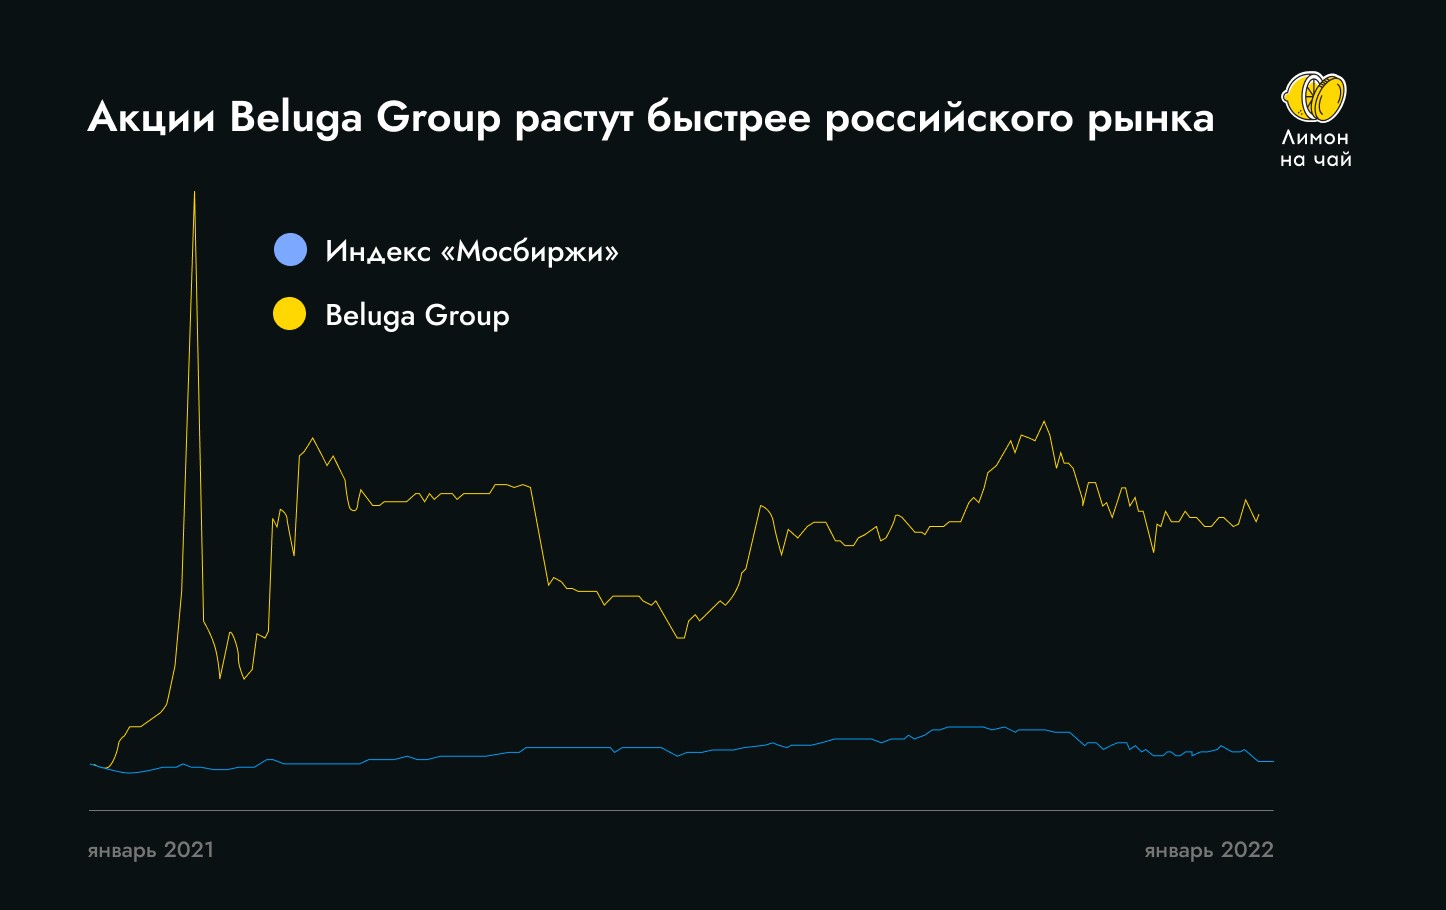 Продажи через интернет выросли в 2,3 раза. О чём ещё говорят в отчёте Beluga Group?